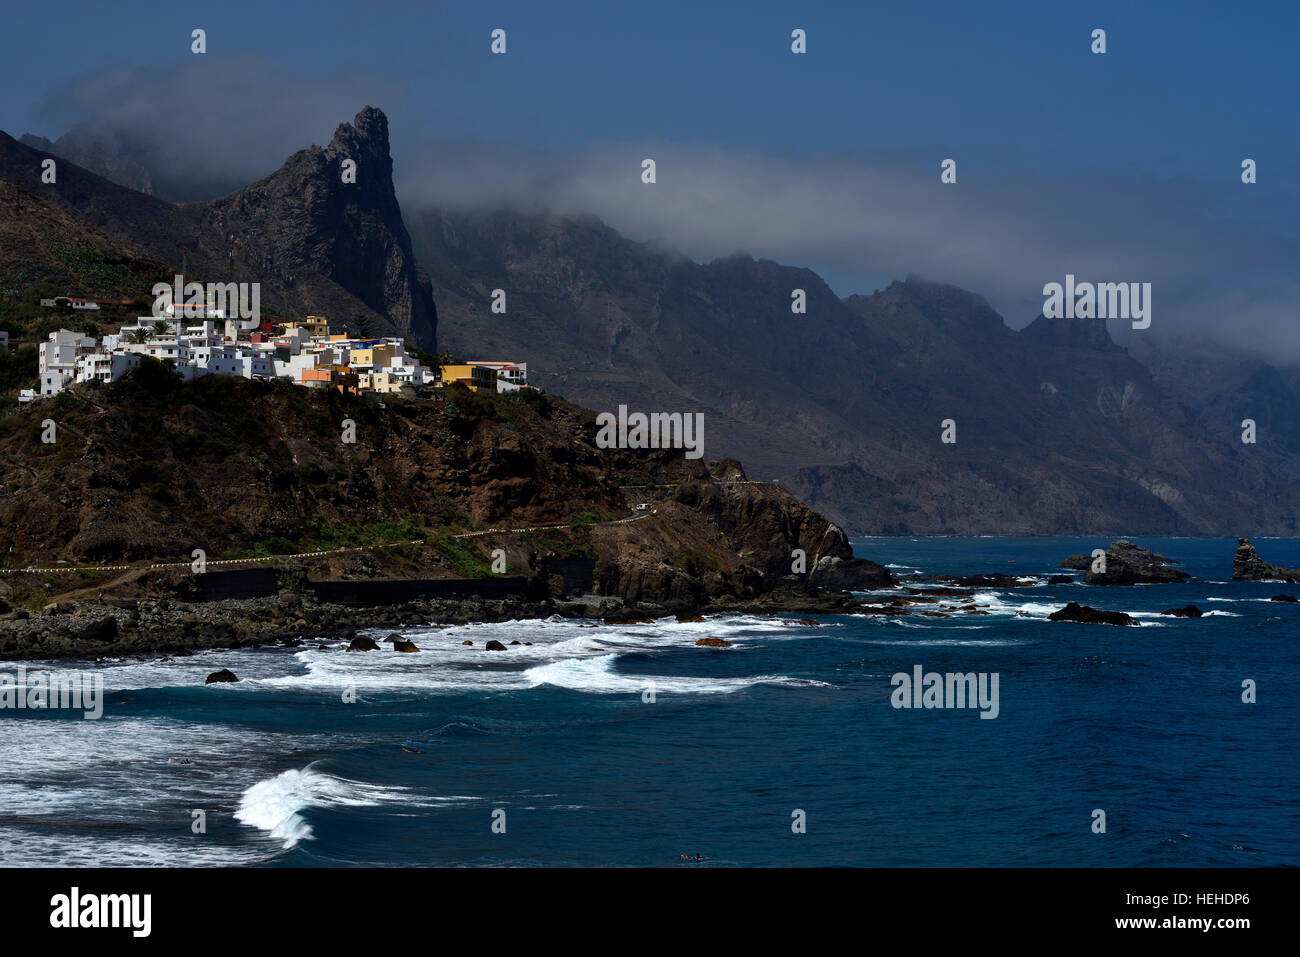 L'almaciga, village sur la falaise sur la mer, les montagnes d'Anaga, Tenerife, Canaries, Espagne Banque D'Images